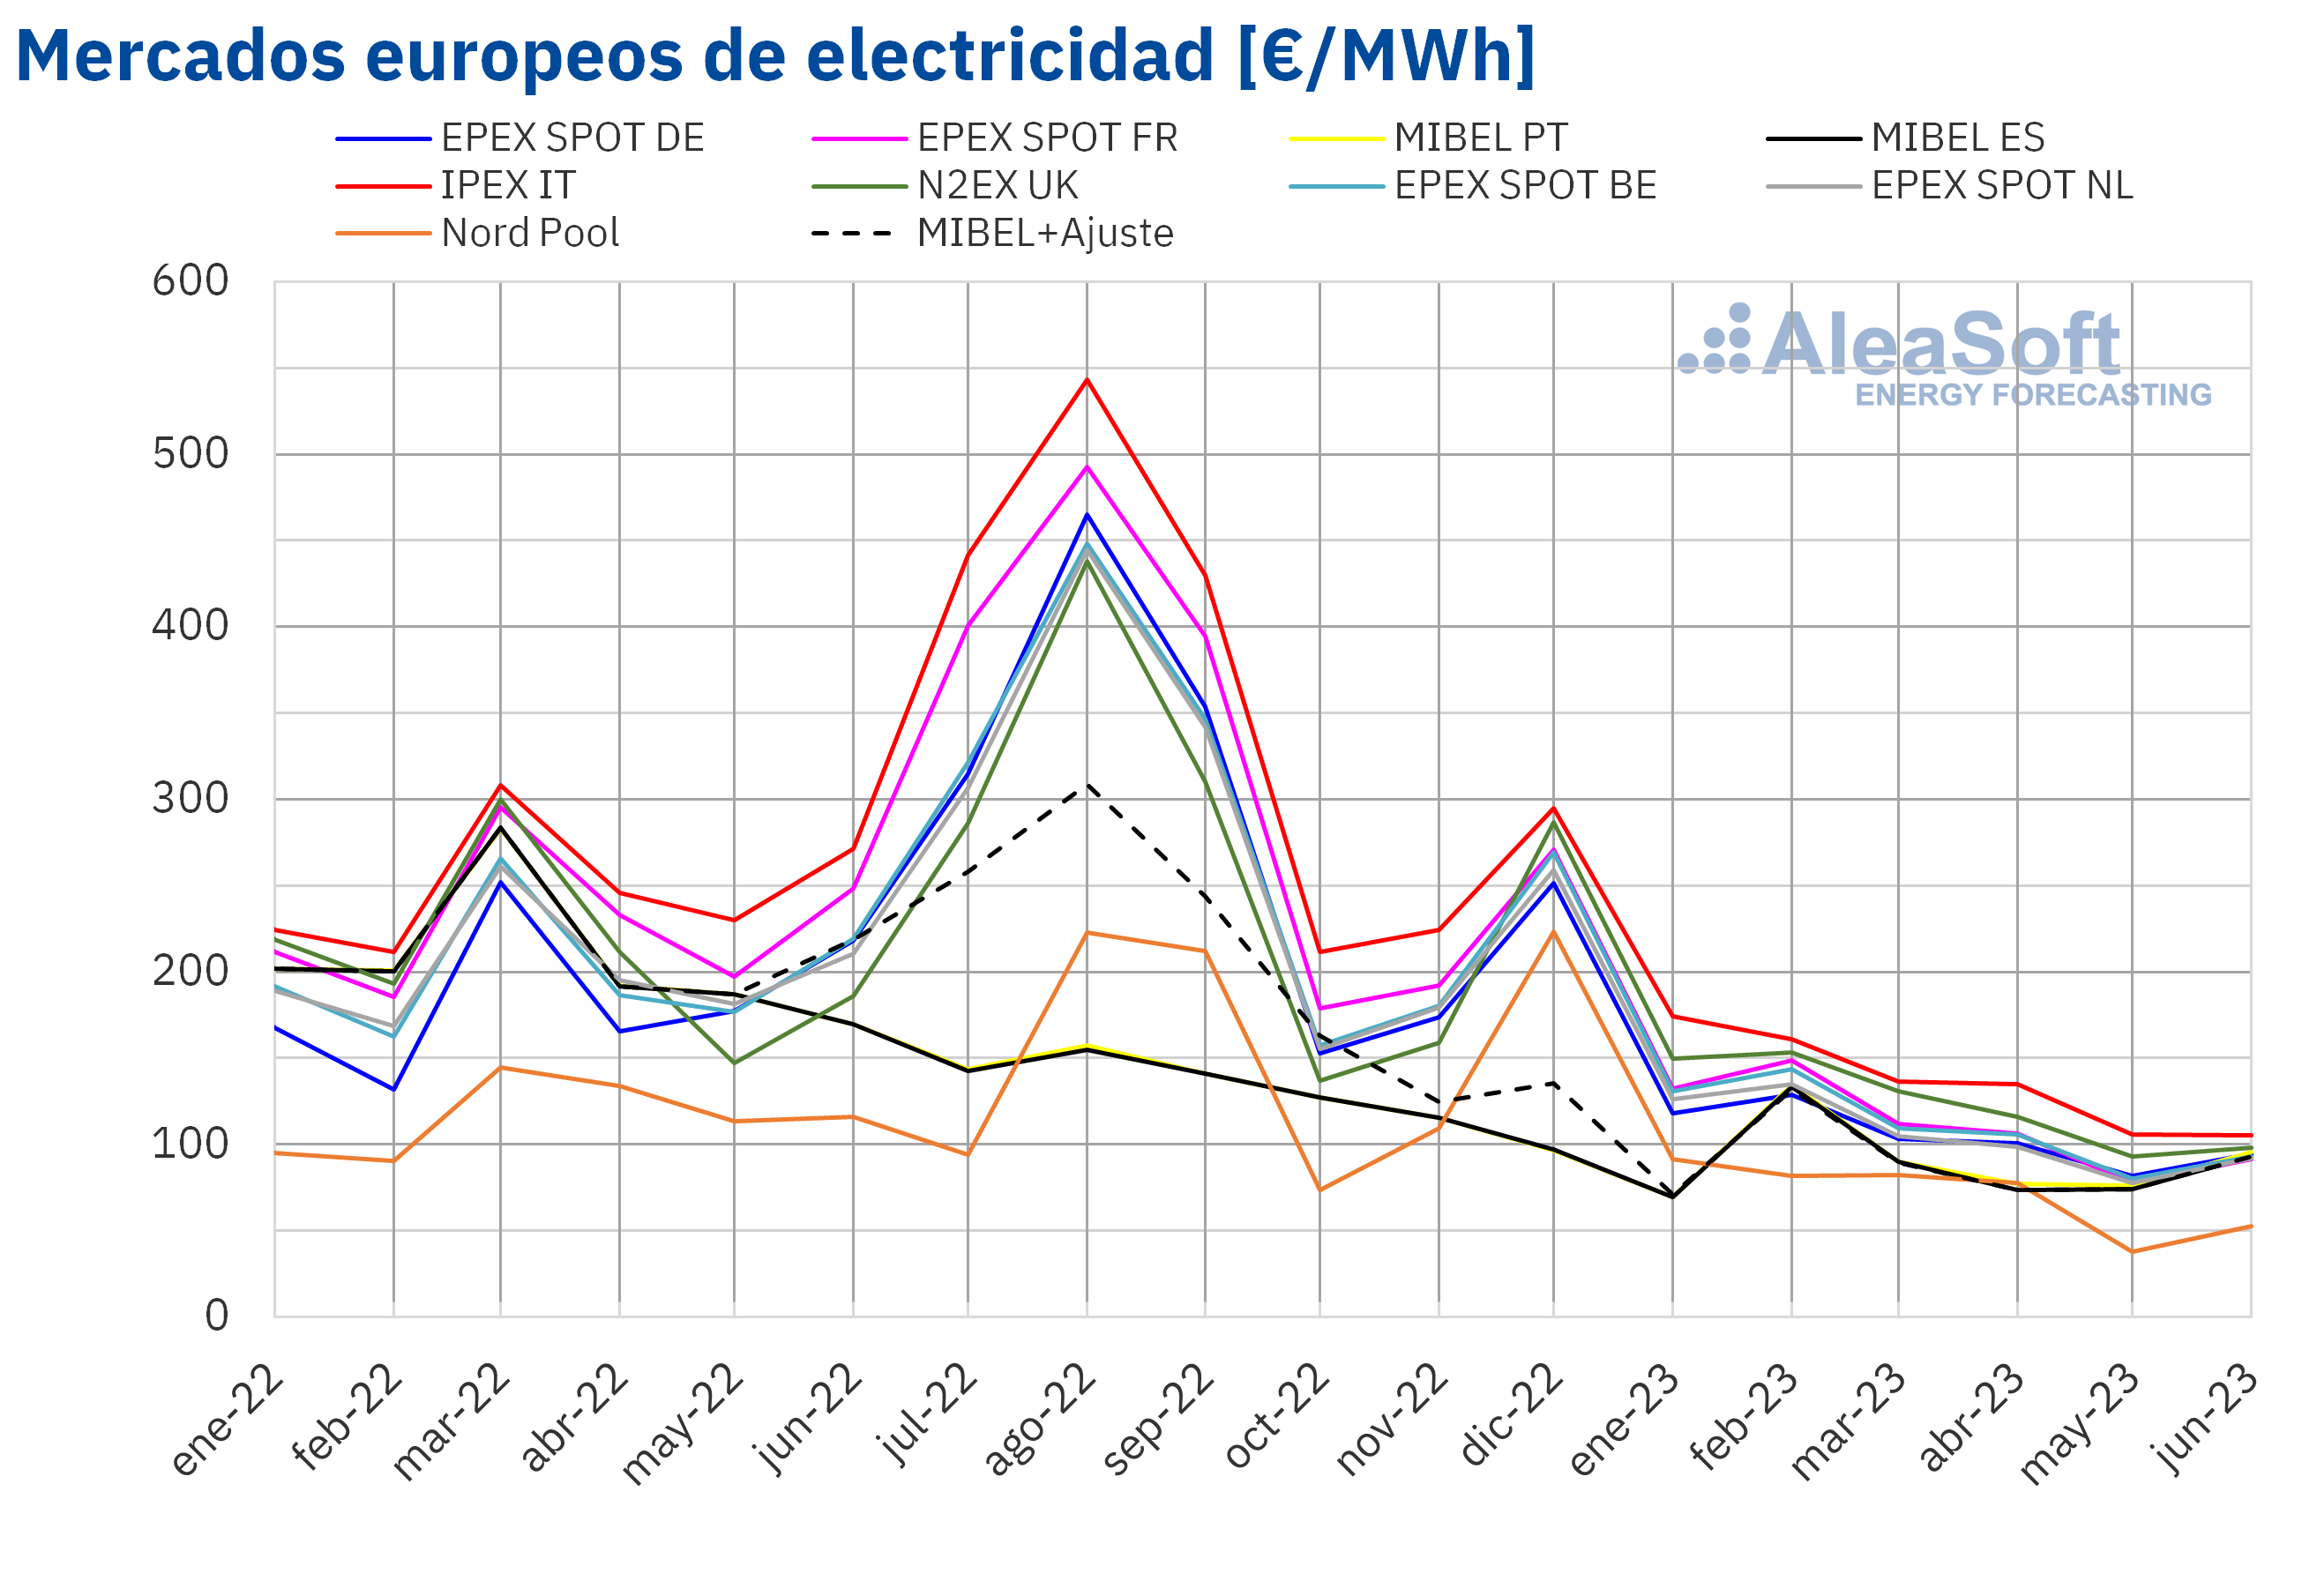 AleaSoft: el gas y las renovables impulsan los precios de mercados europeos a la baja en el primer semestre